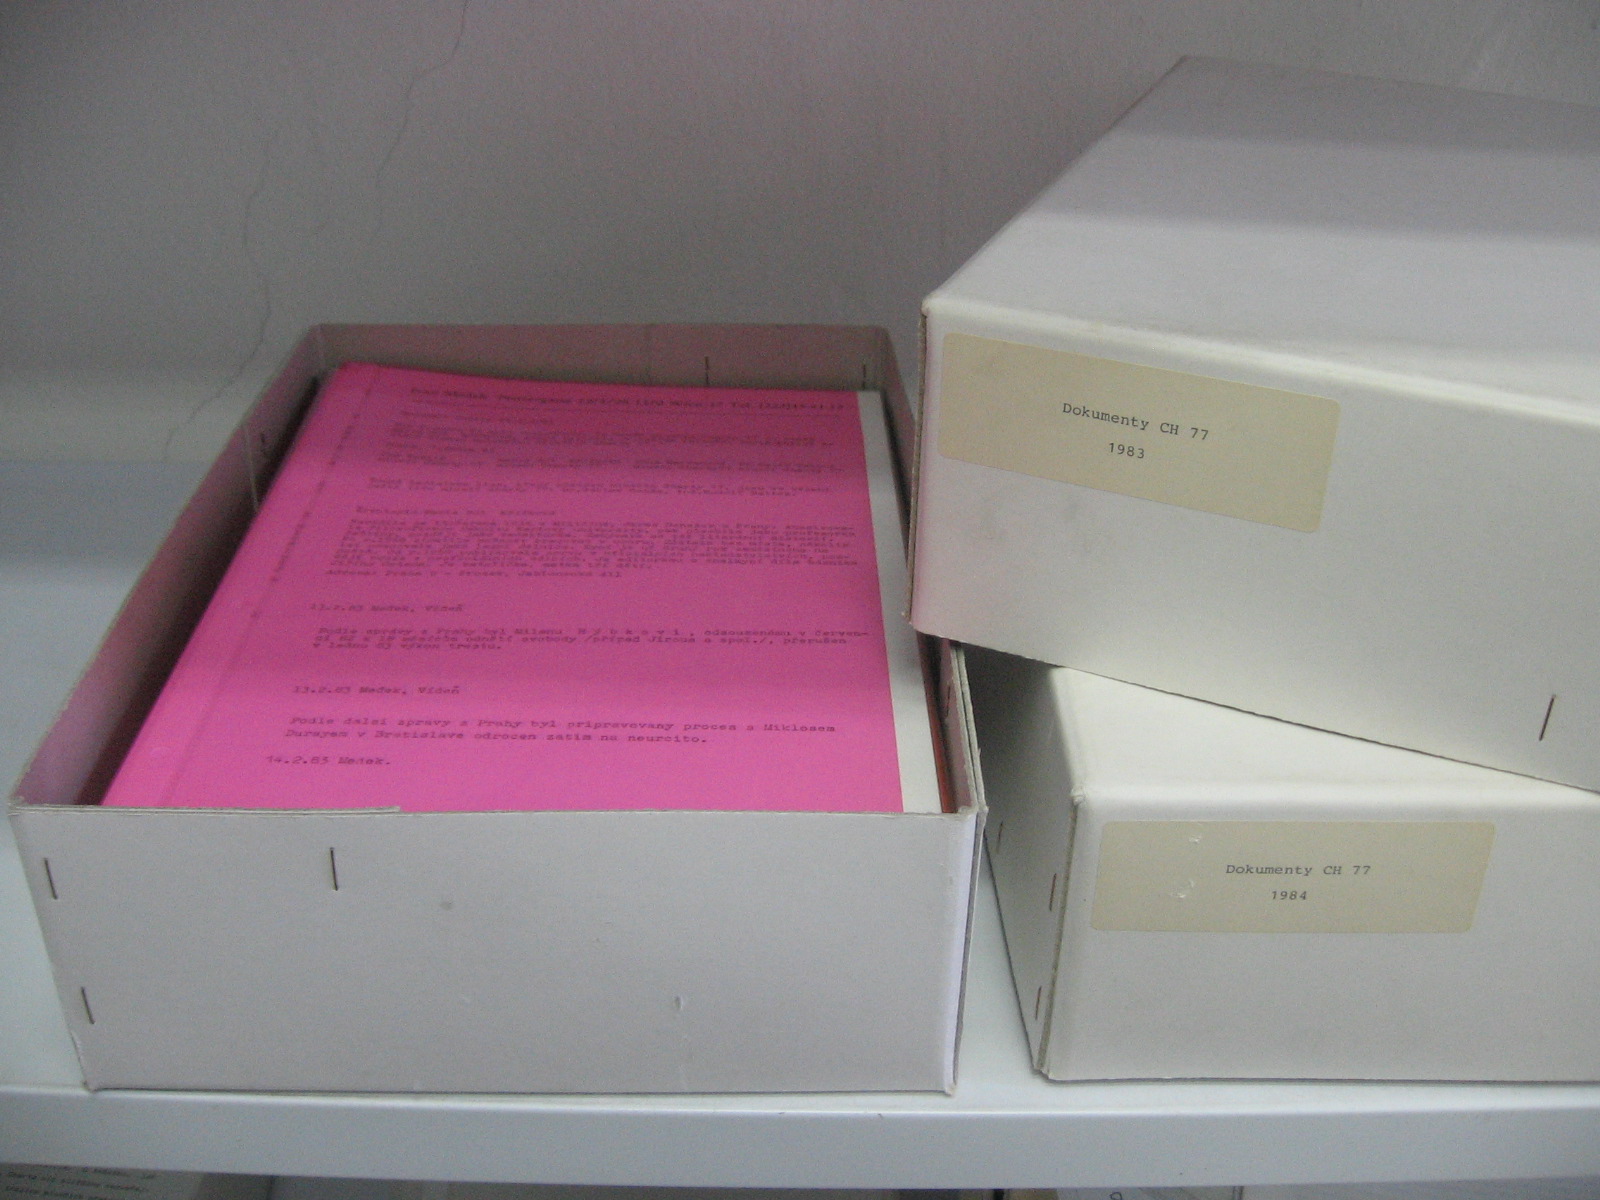 Sbírka Charta 77 - původní archivní uložení